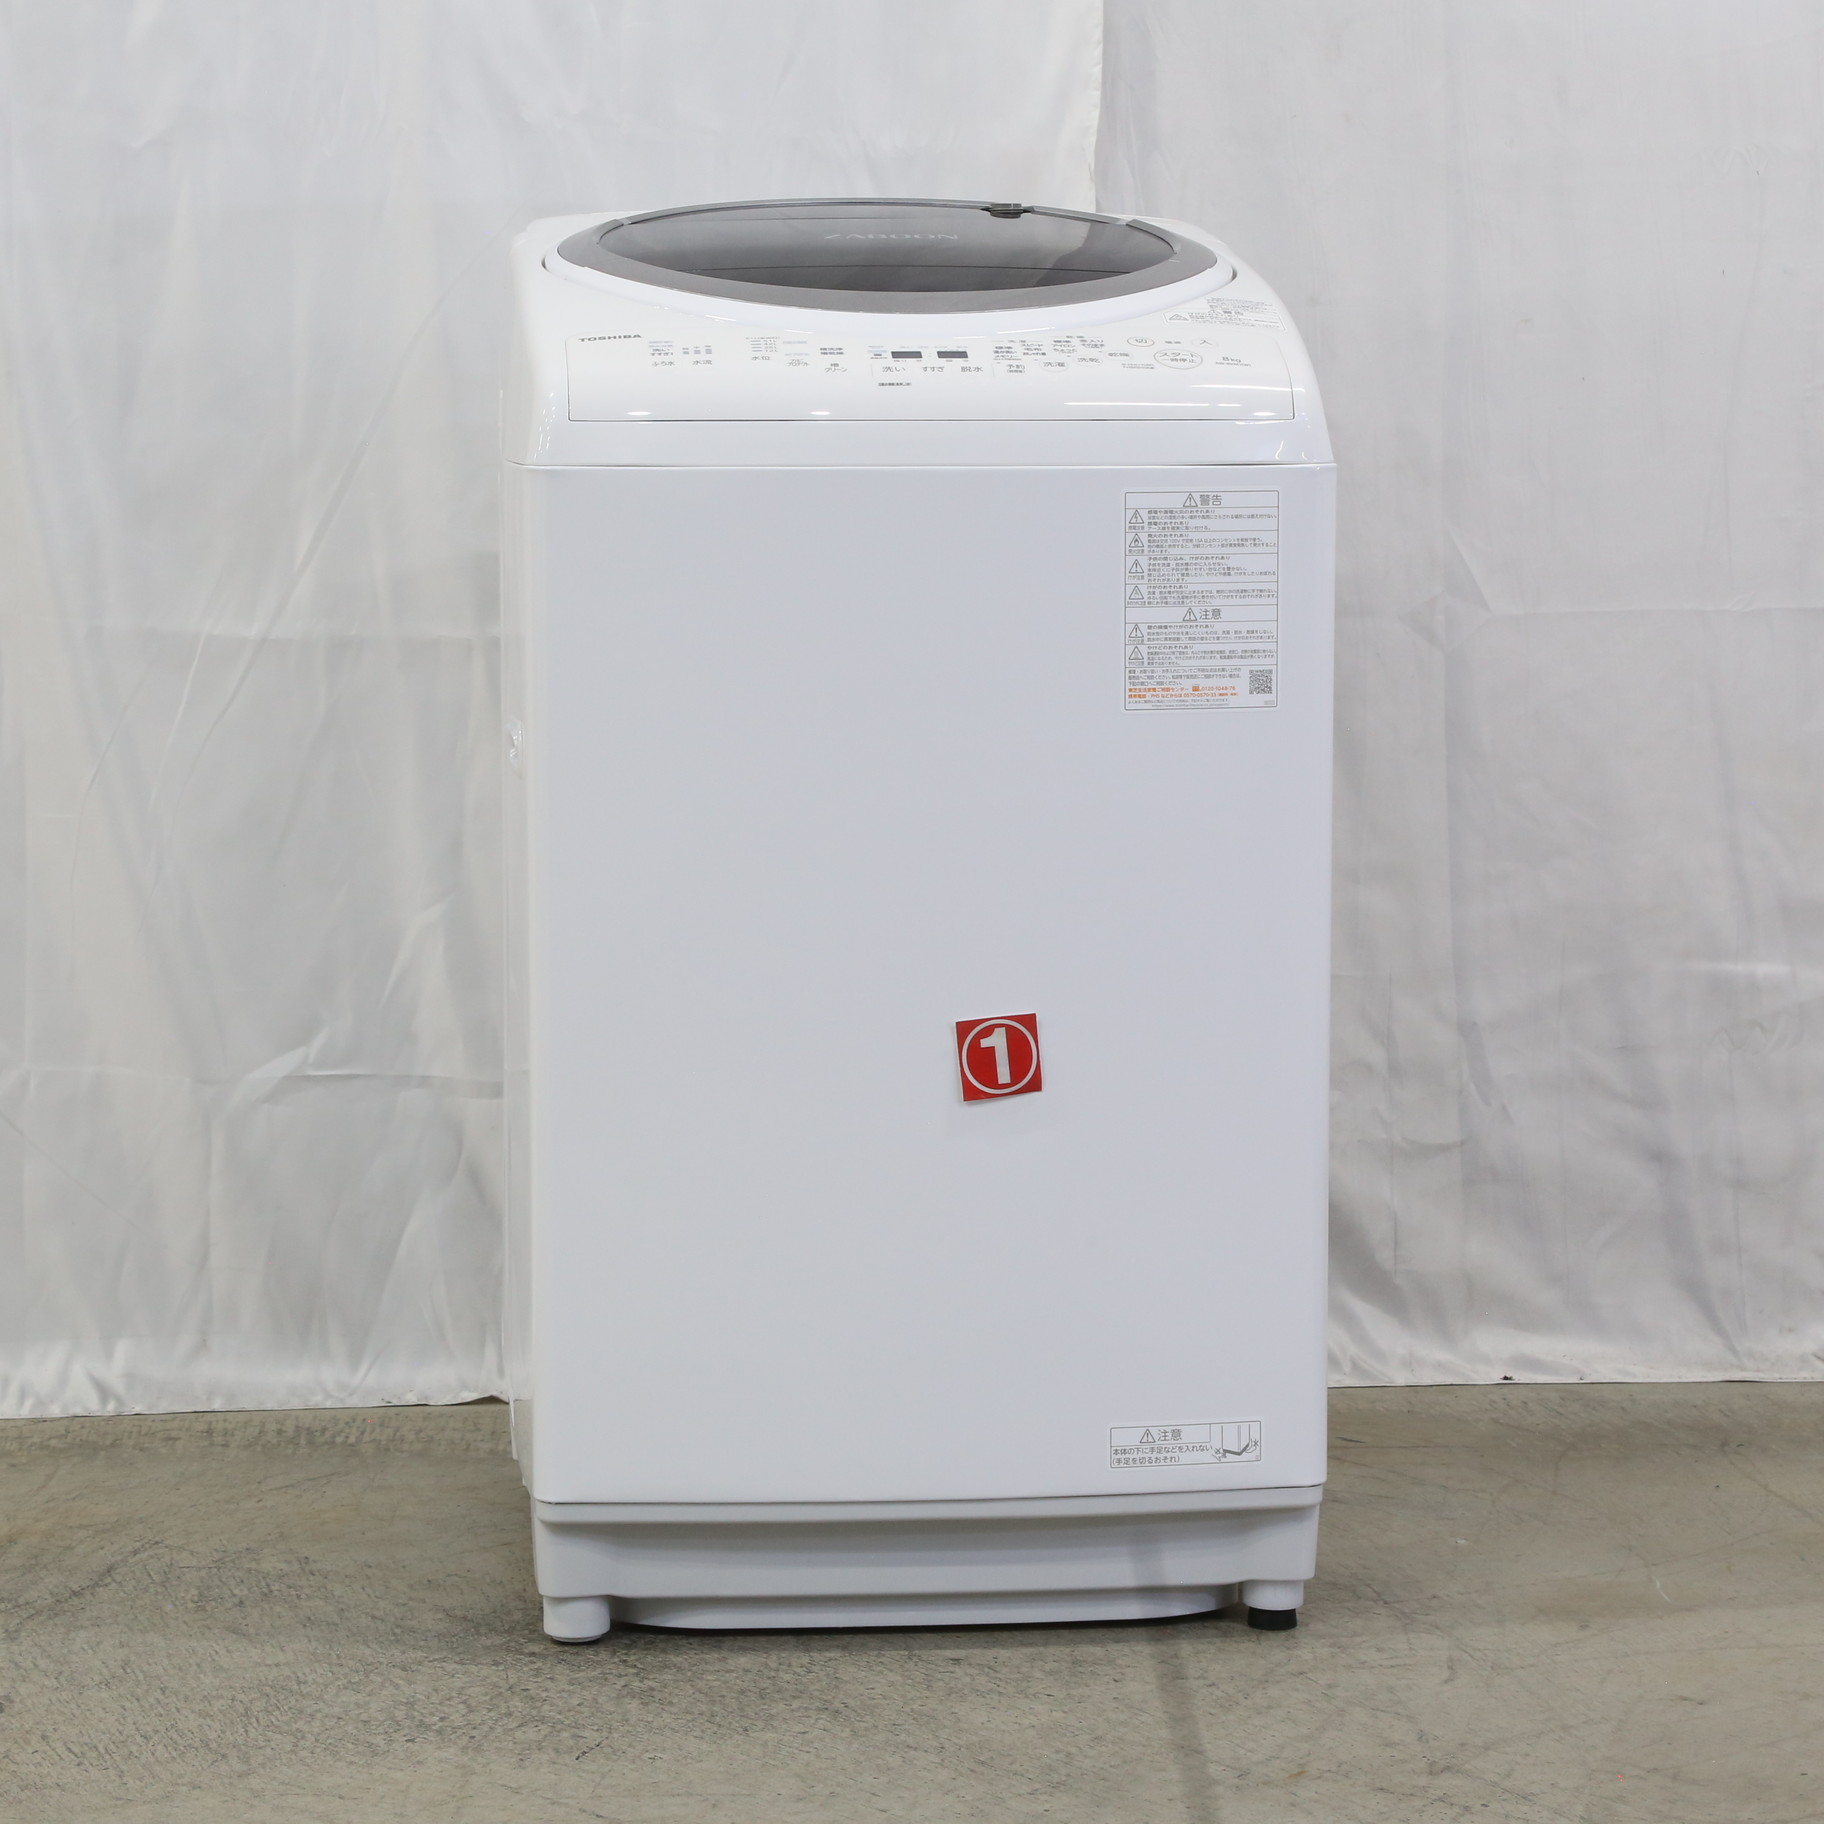 【低価大人気】TOSHIBA AW-8VM1(W) WHITE 洗濯機